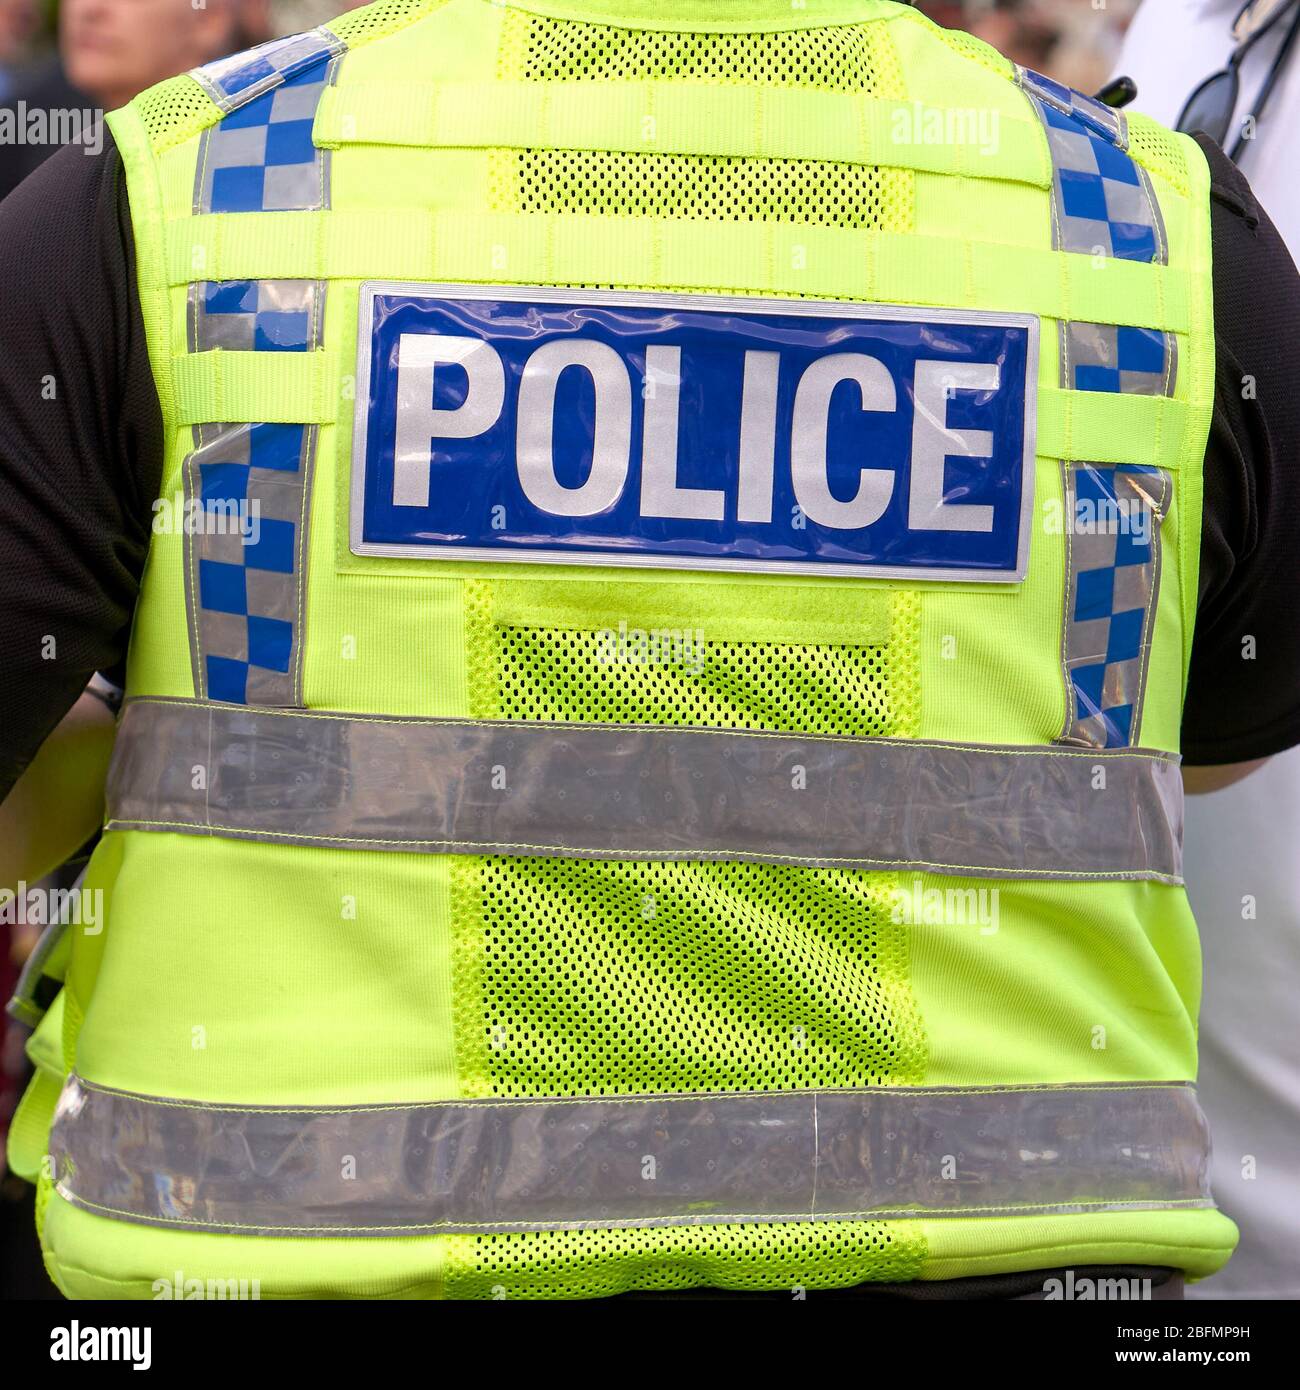 UK Police high visibility jacket Stock Photo